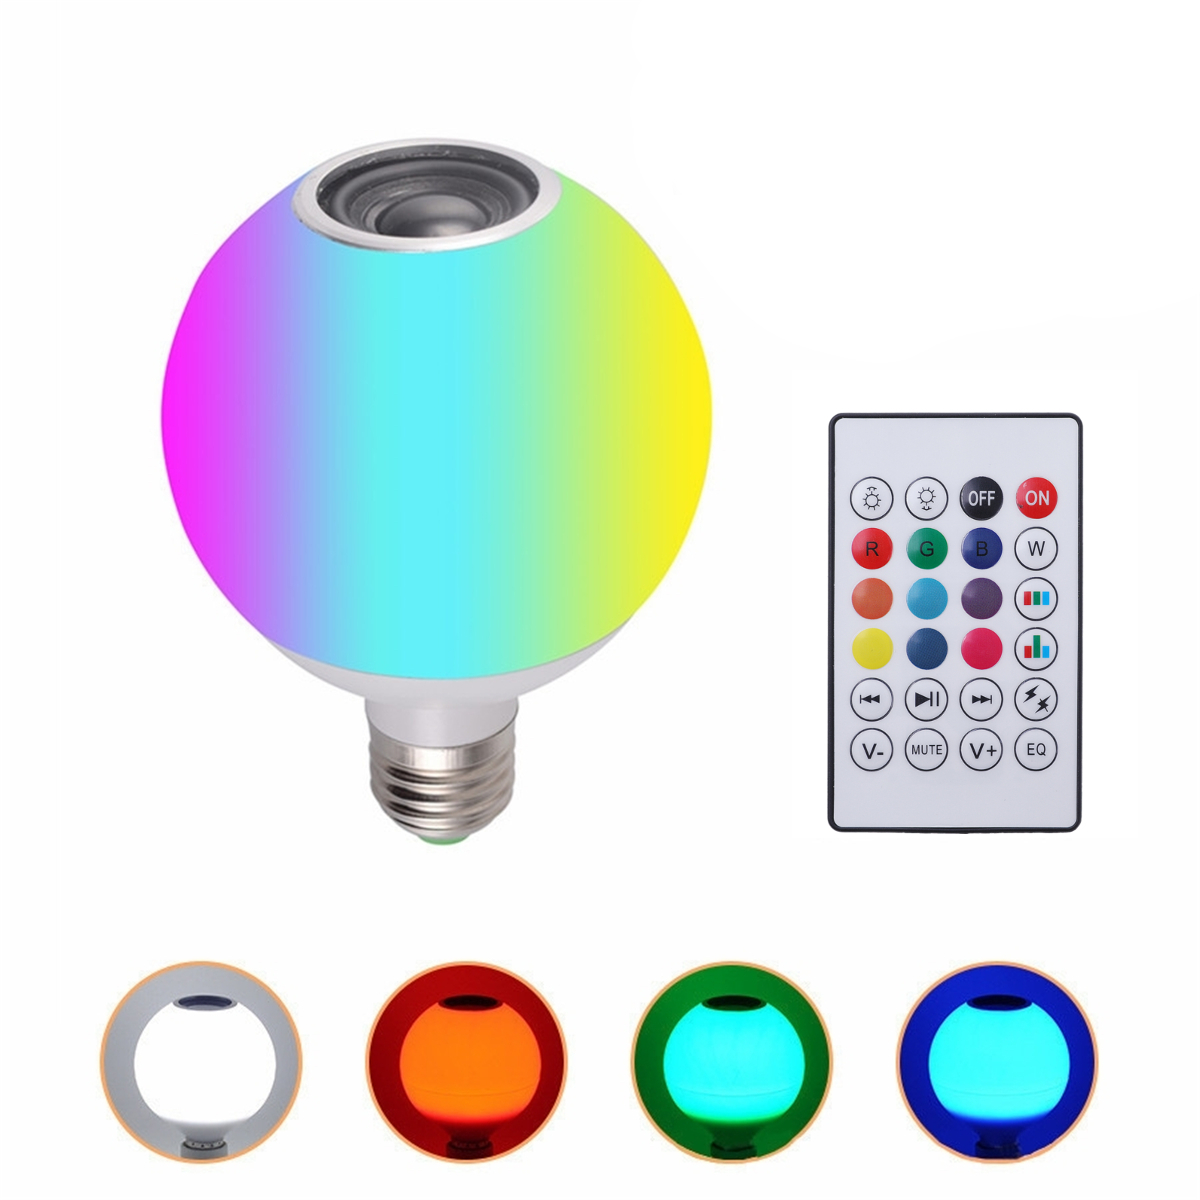 

AC100-245V 12W RGBW LED Беспроводная связь Bluetooth Динамик Лампочка Музыка Play Лампа + Дистанционное Управление